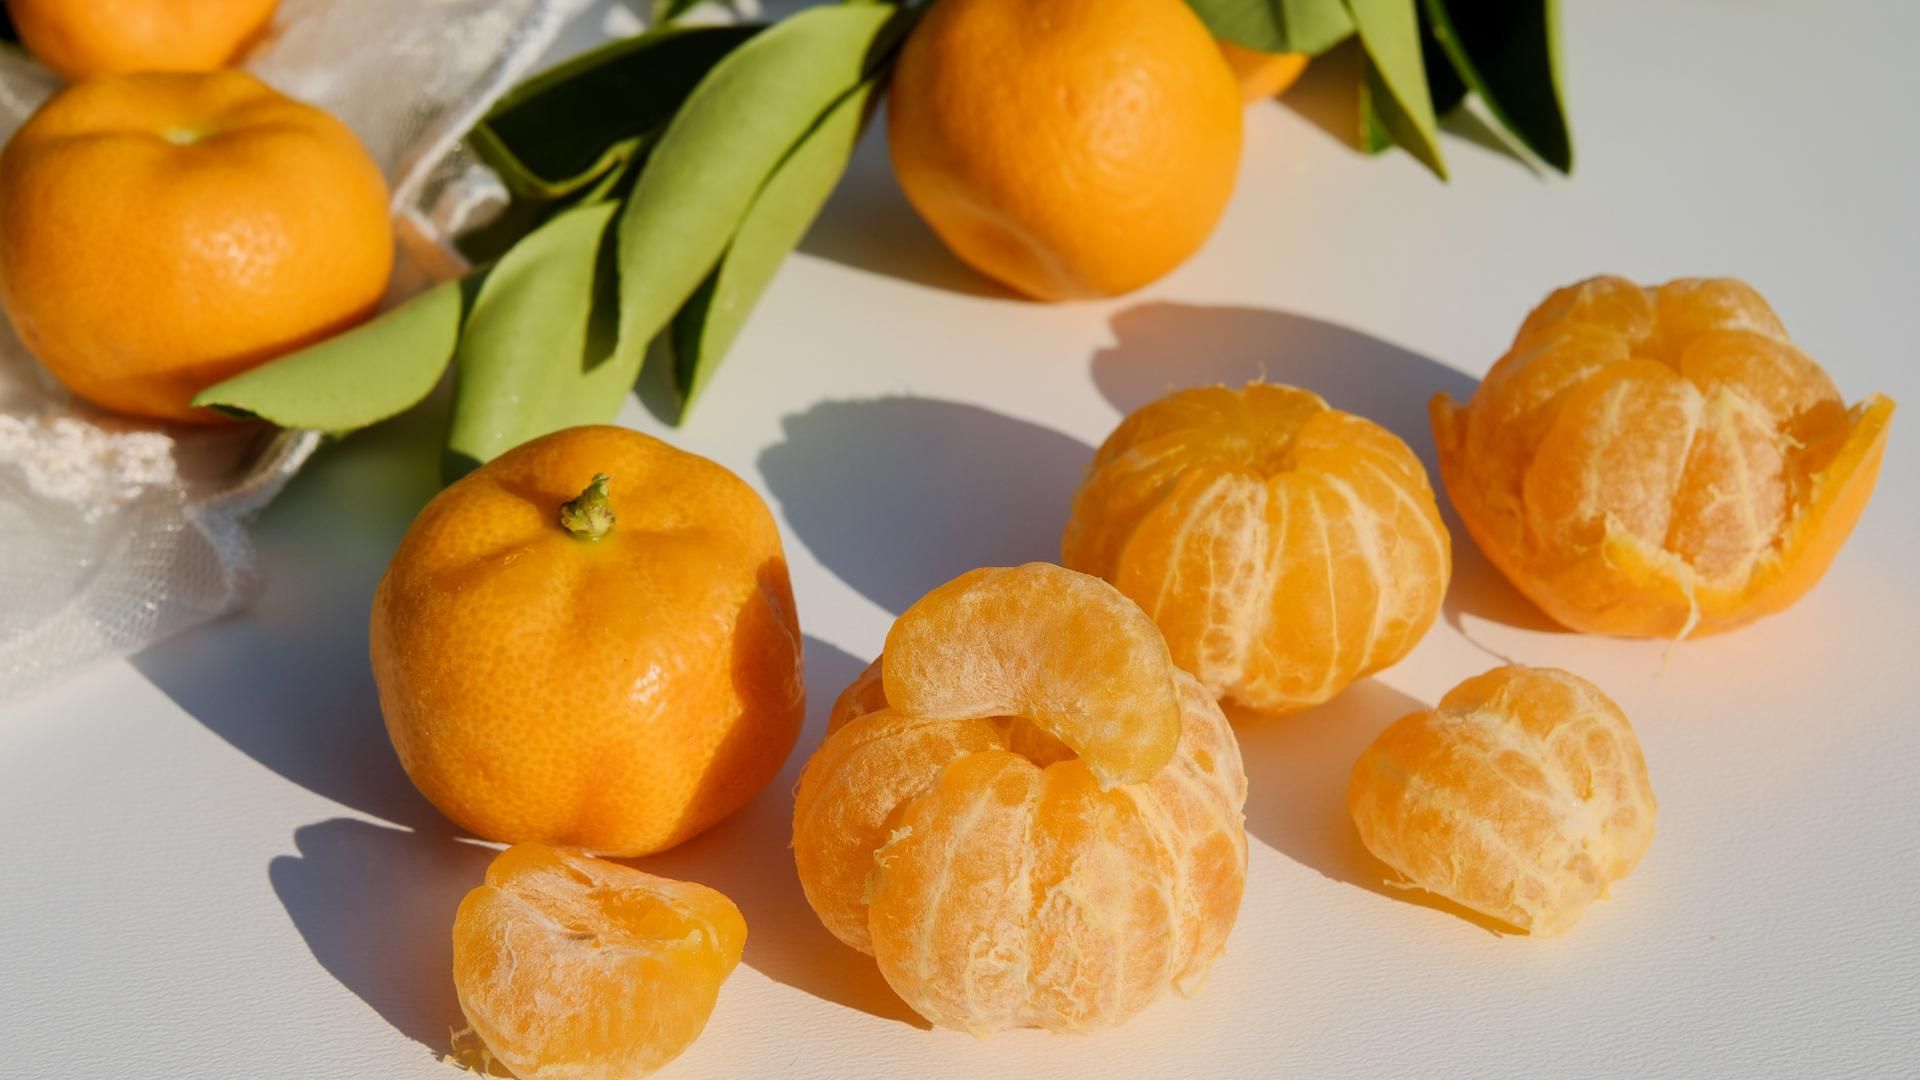 Varias mandarinas.